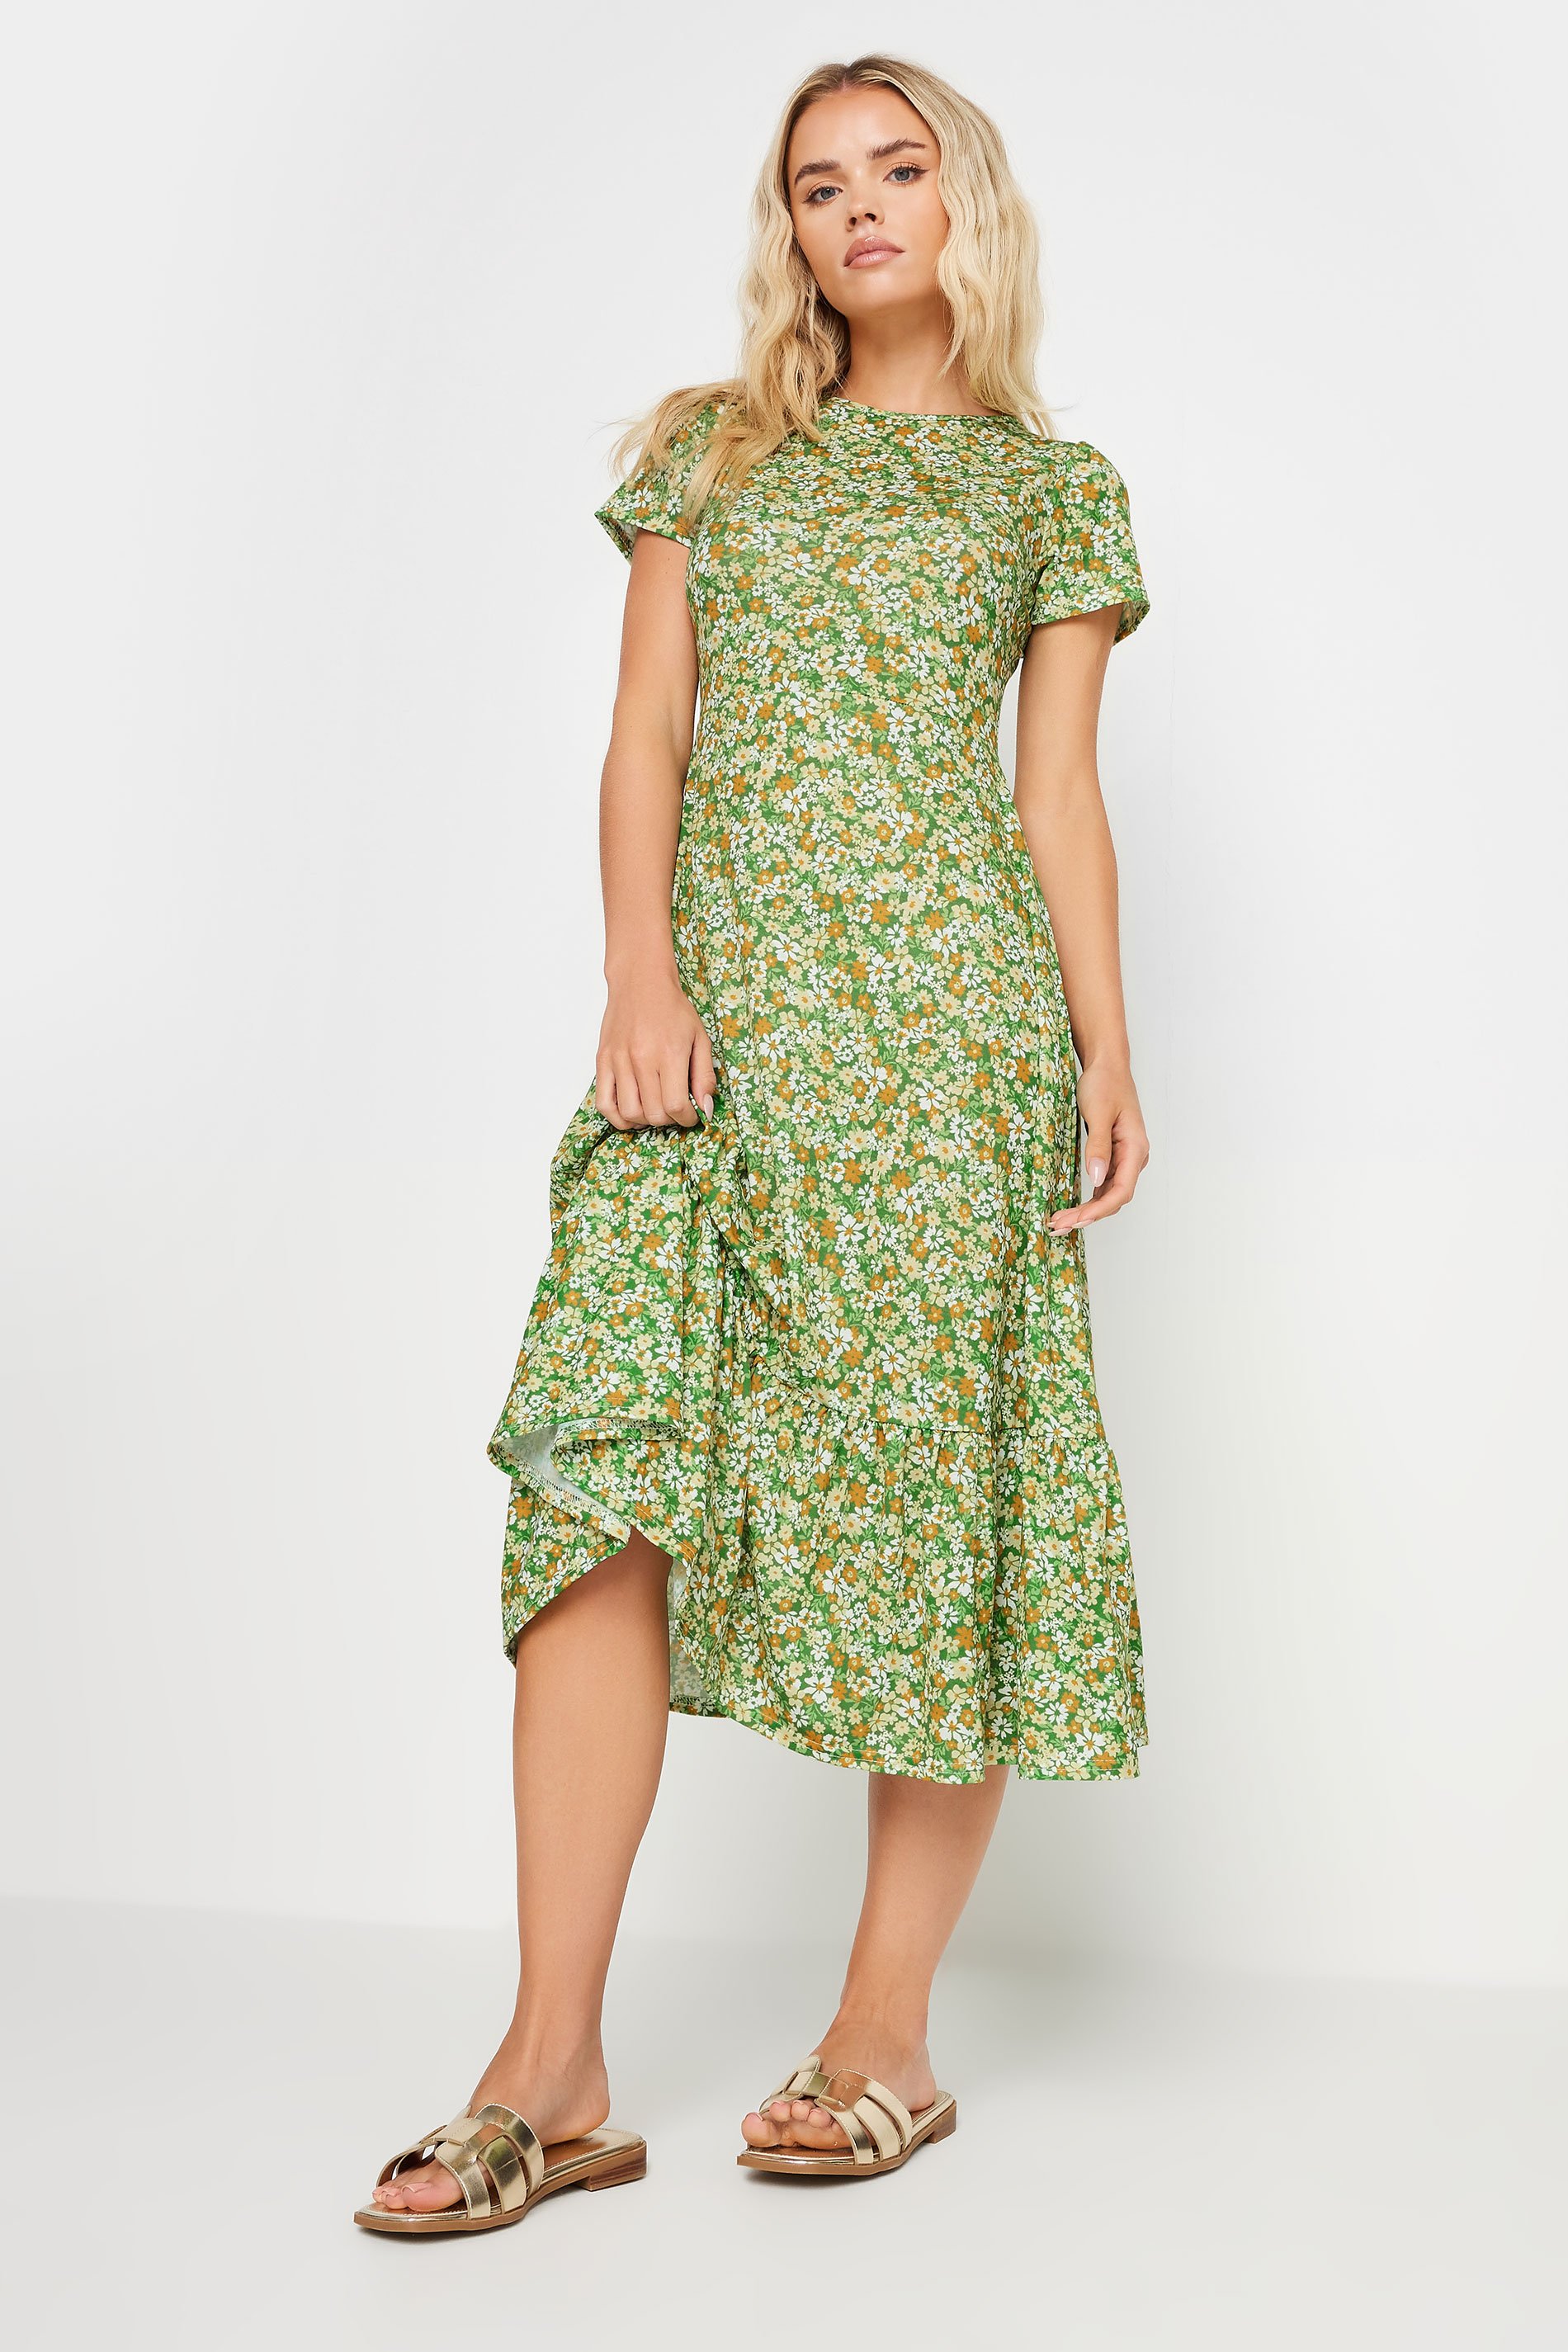 PixieGirl Petite Women's Sage Green Ditsy Floral Print Tiered Midi Dress | PixieGirl 2